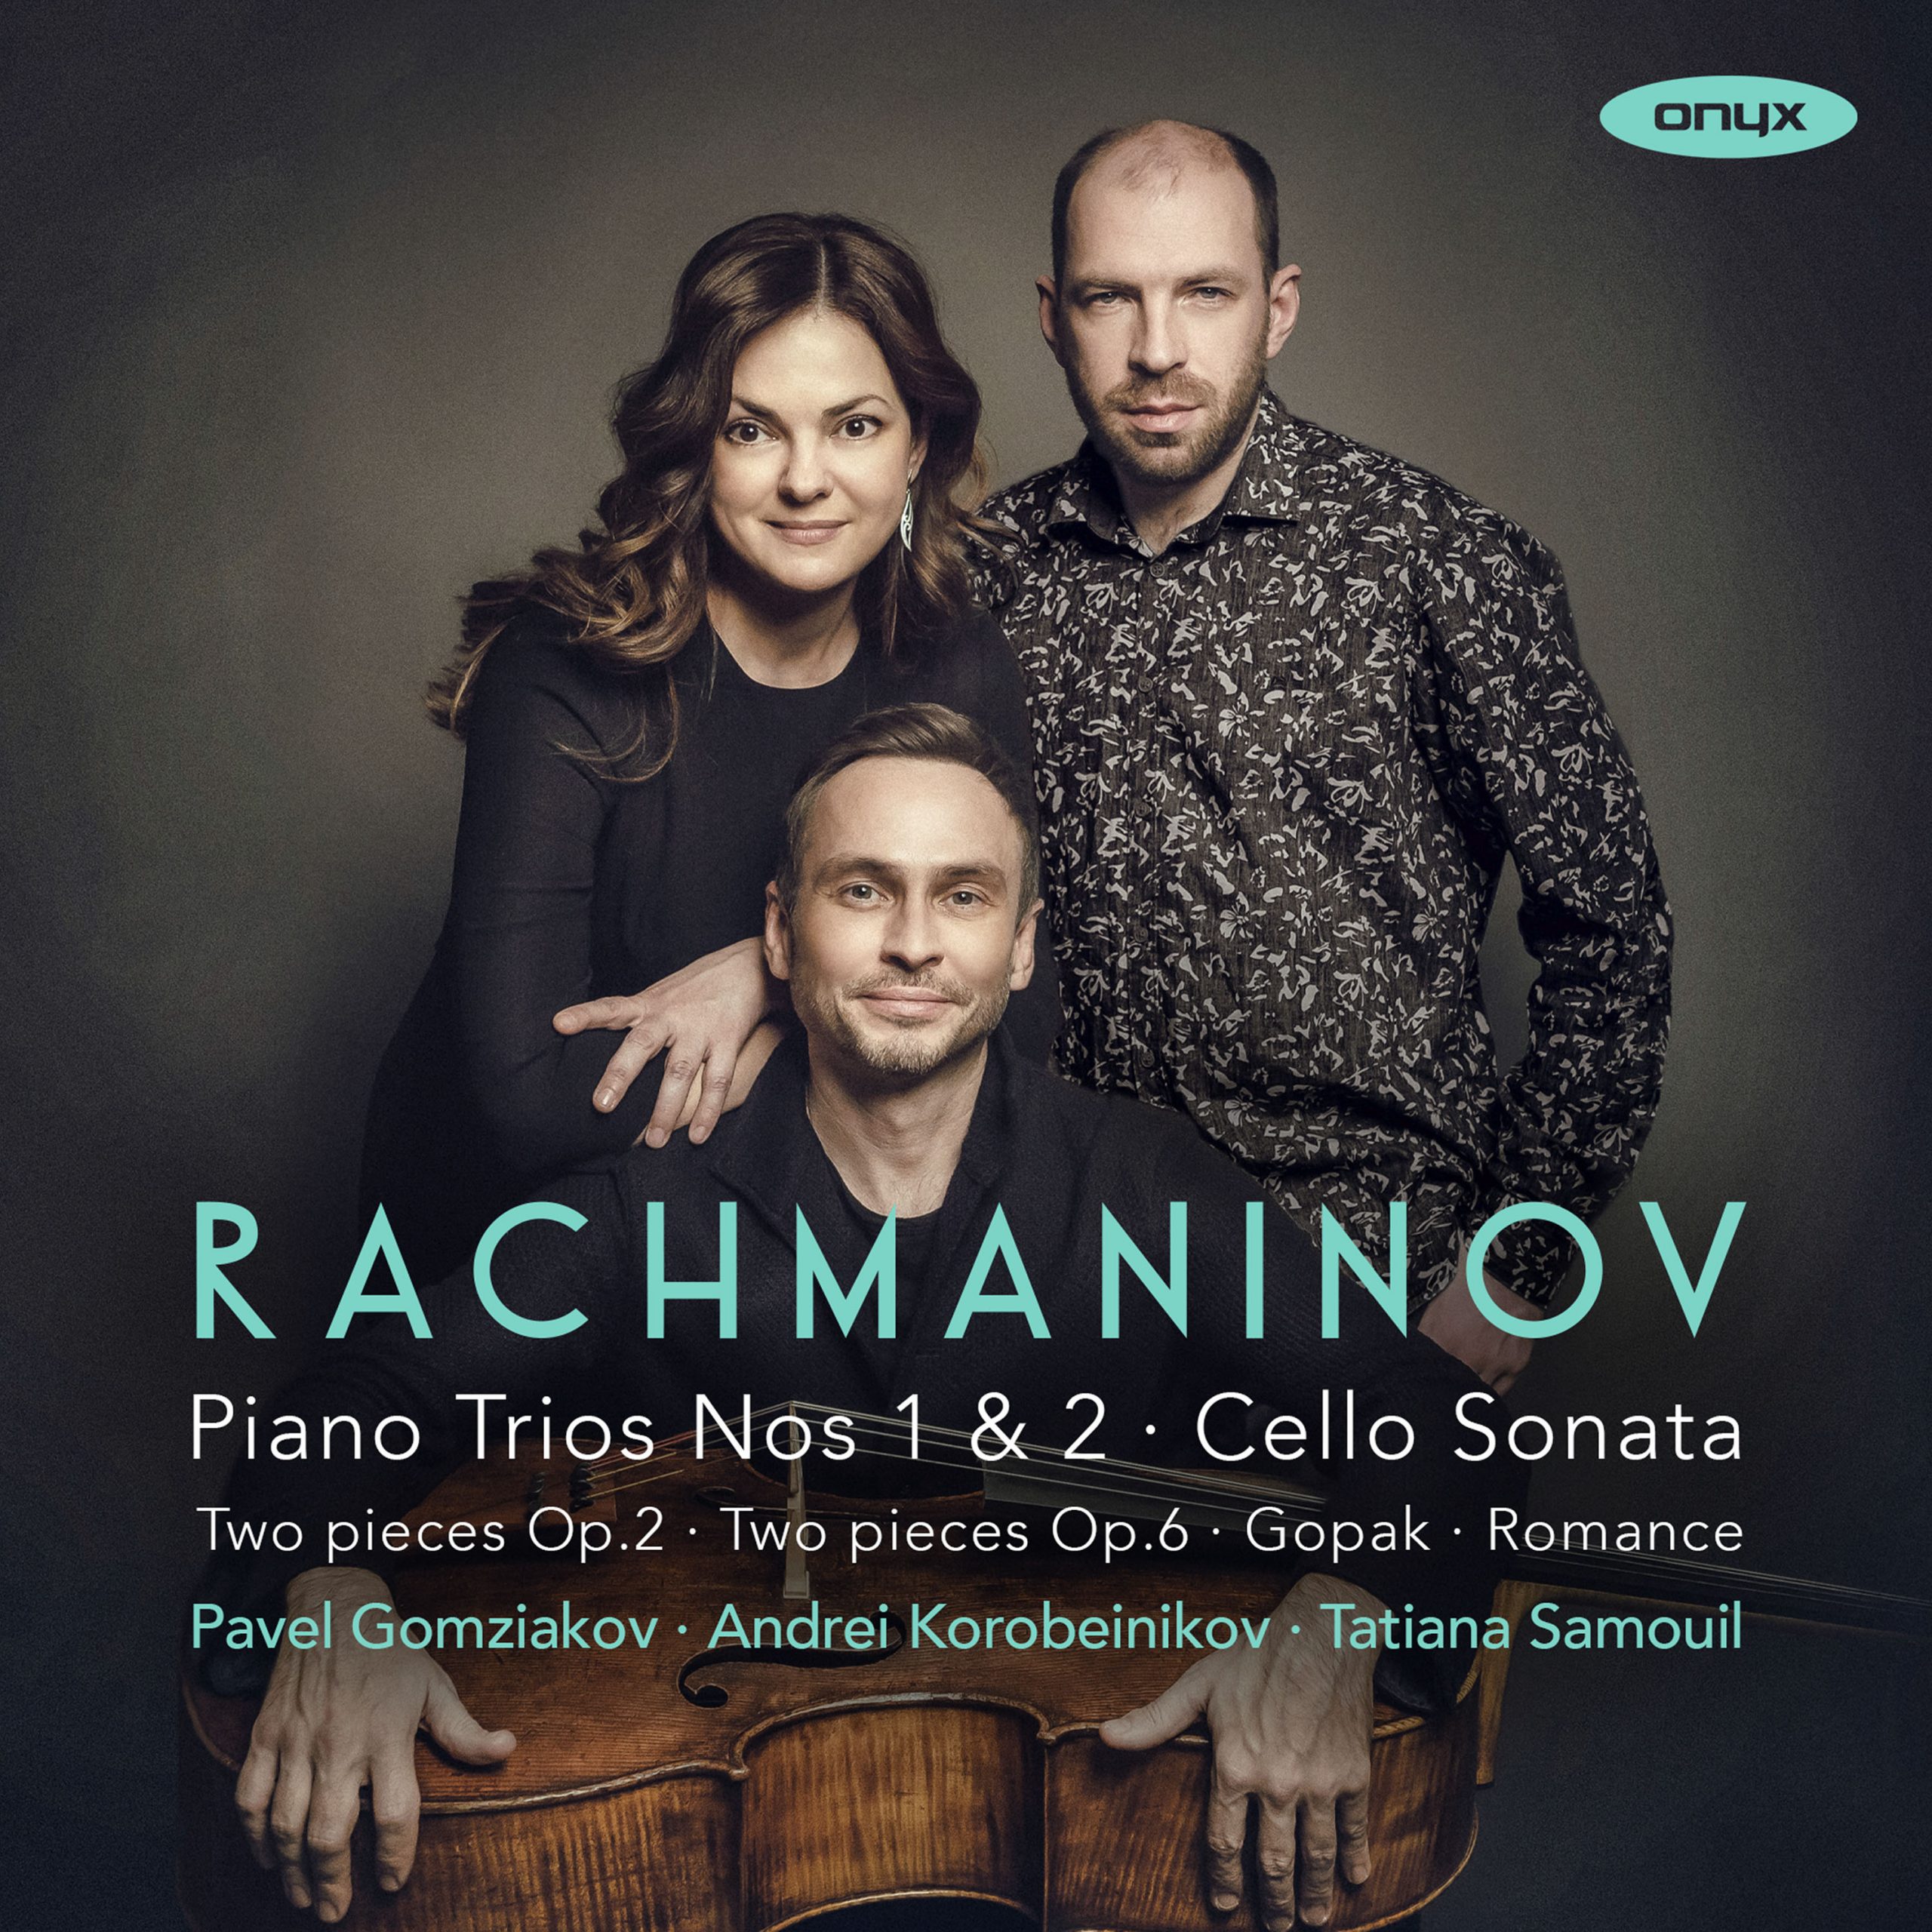 Rachmaninov Chamber Music